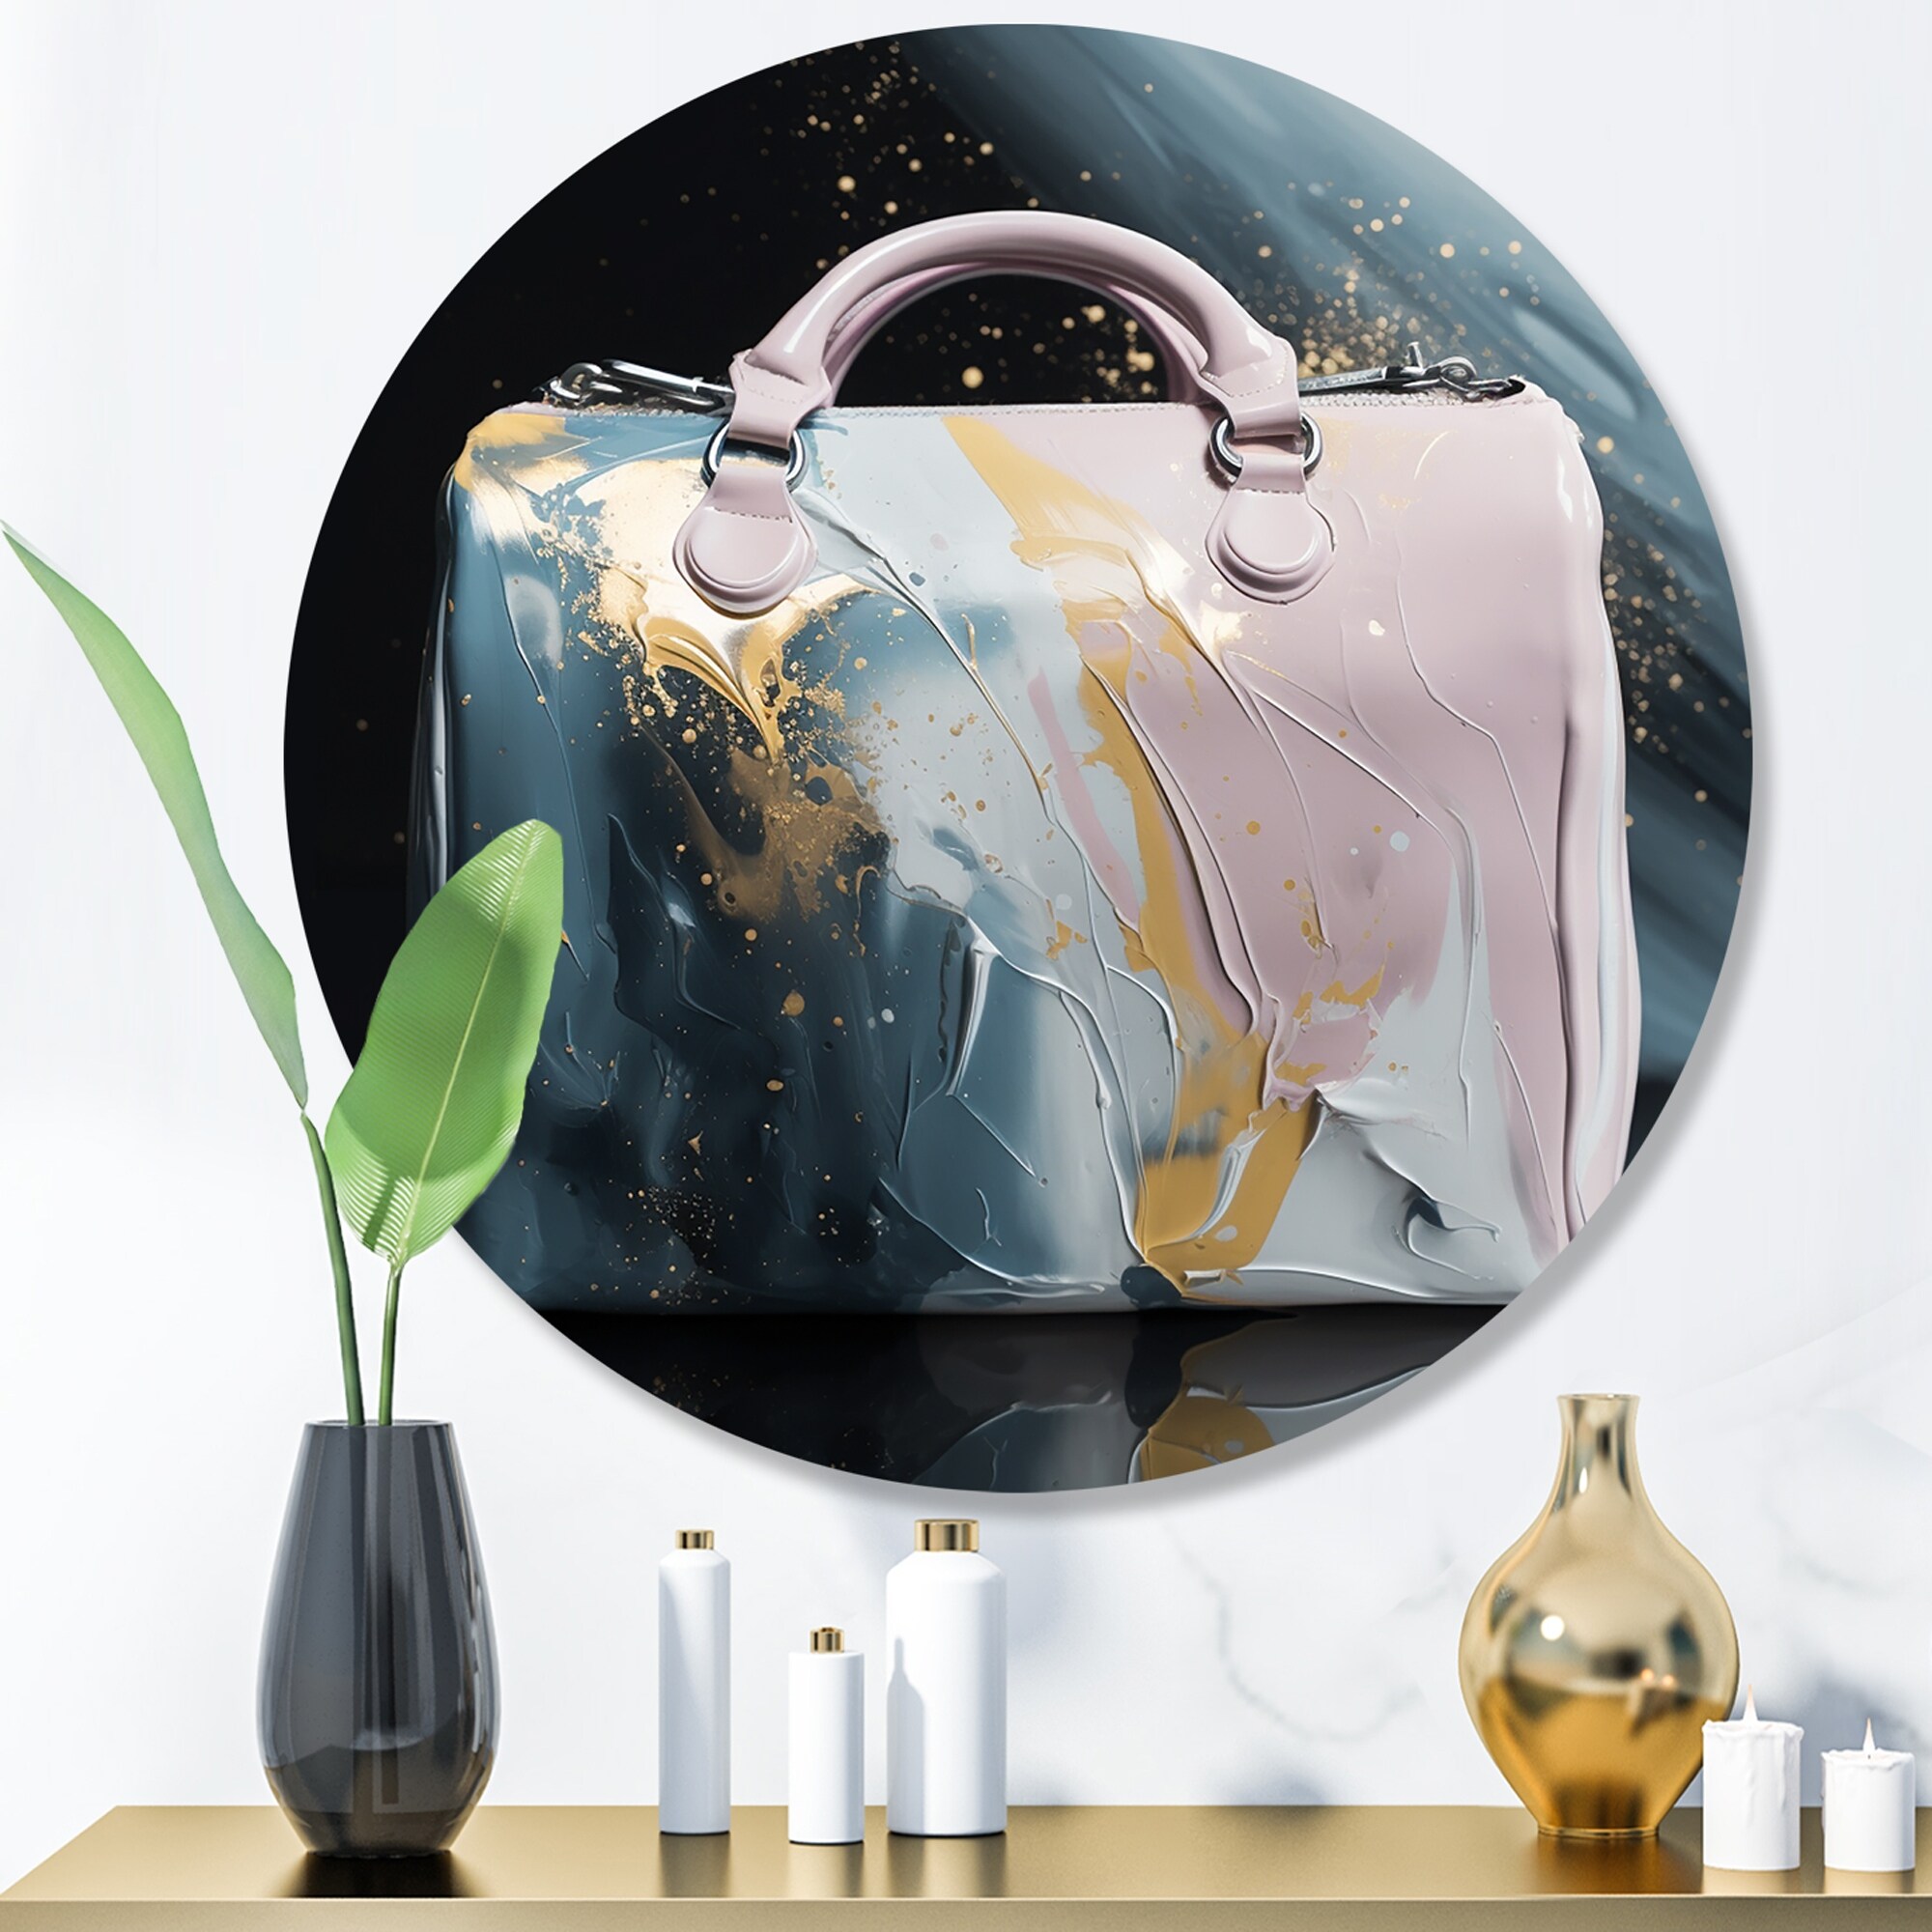 Monet Louis Vuitton  Luxury purses, Purse accessories, Louis vuitton bag